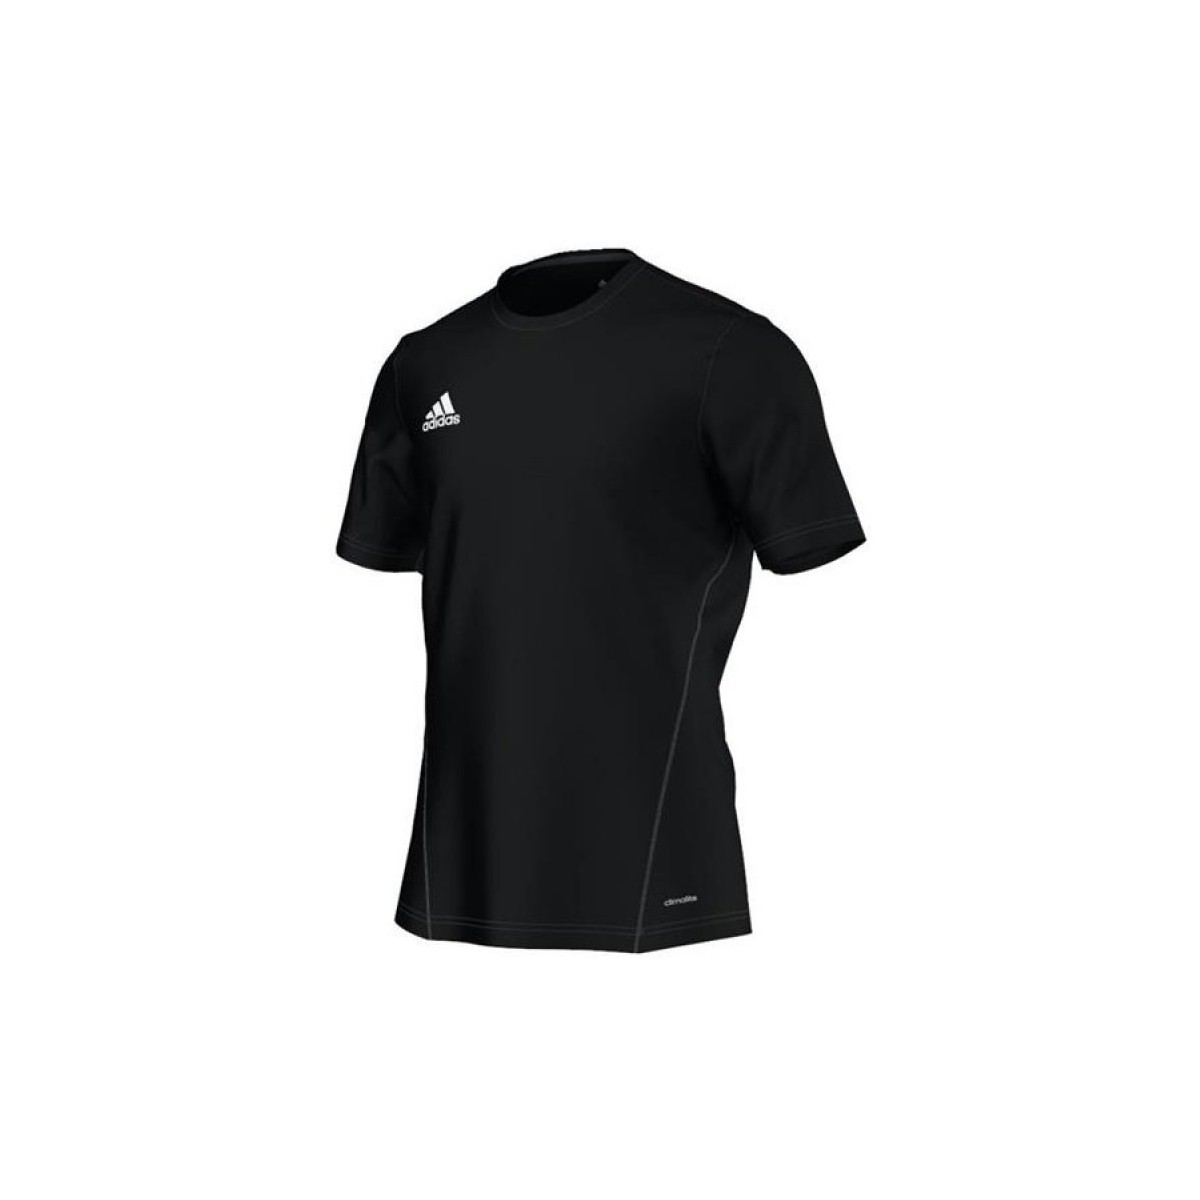 Vêtements Homme T-shirts manches courtes adidas Originals Core 15 Noir